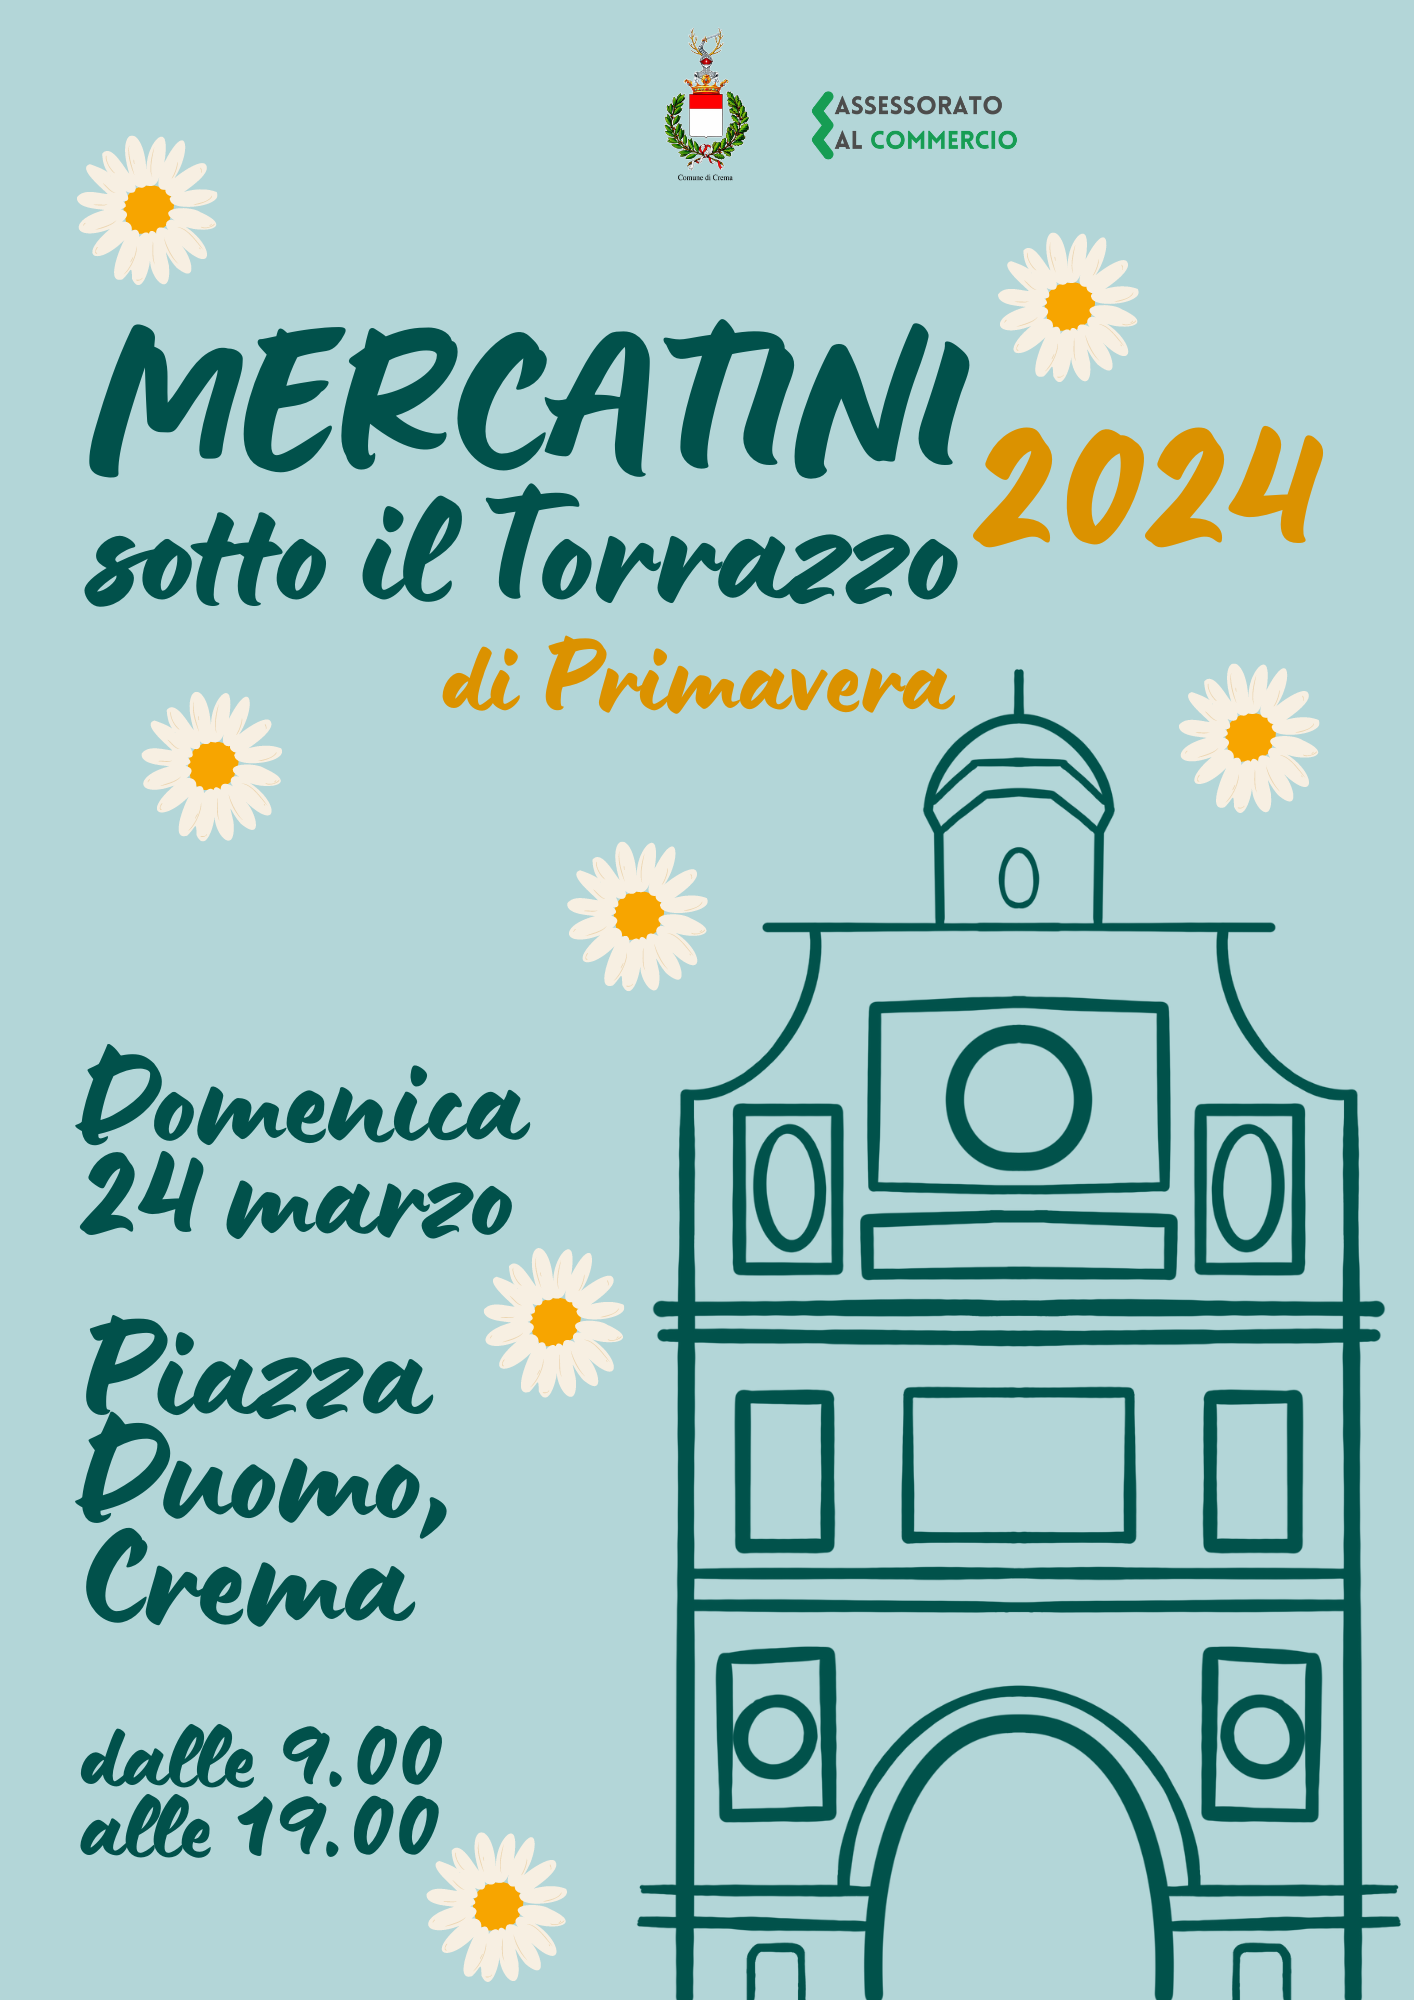 Domenica 24 marzo tornano i ‘Mercatini sotto il Torrazzo’ in edizione primaverile